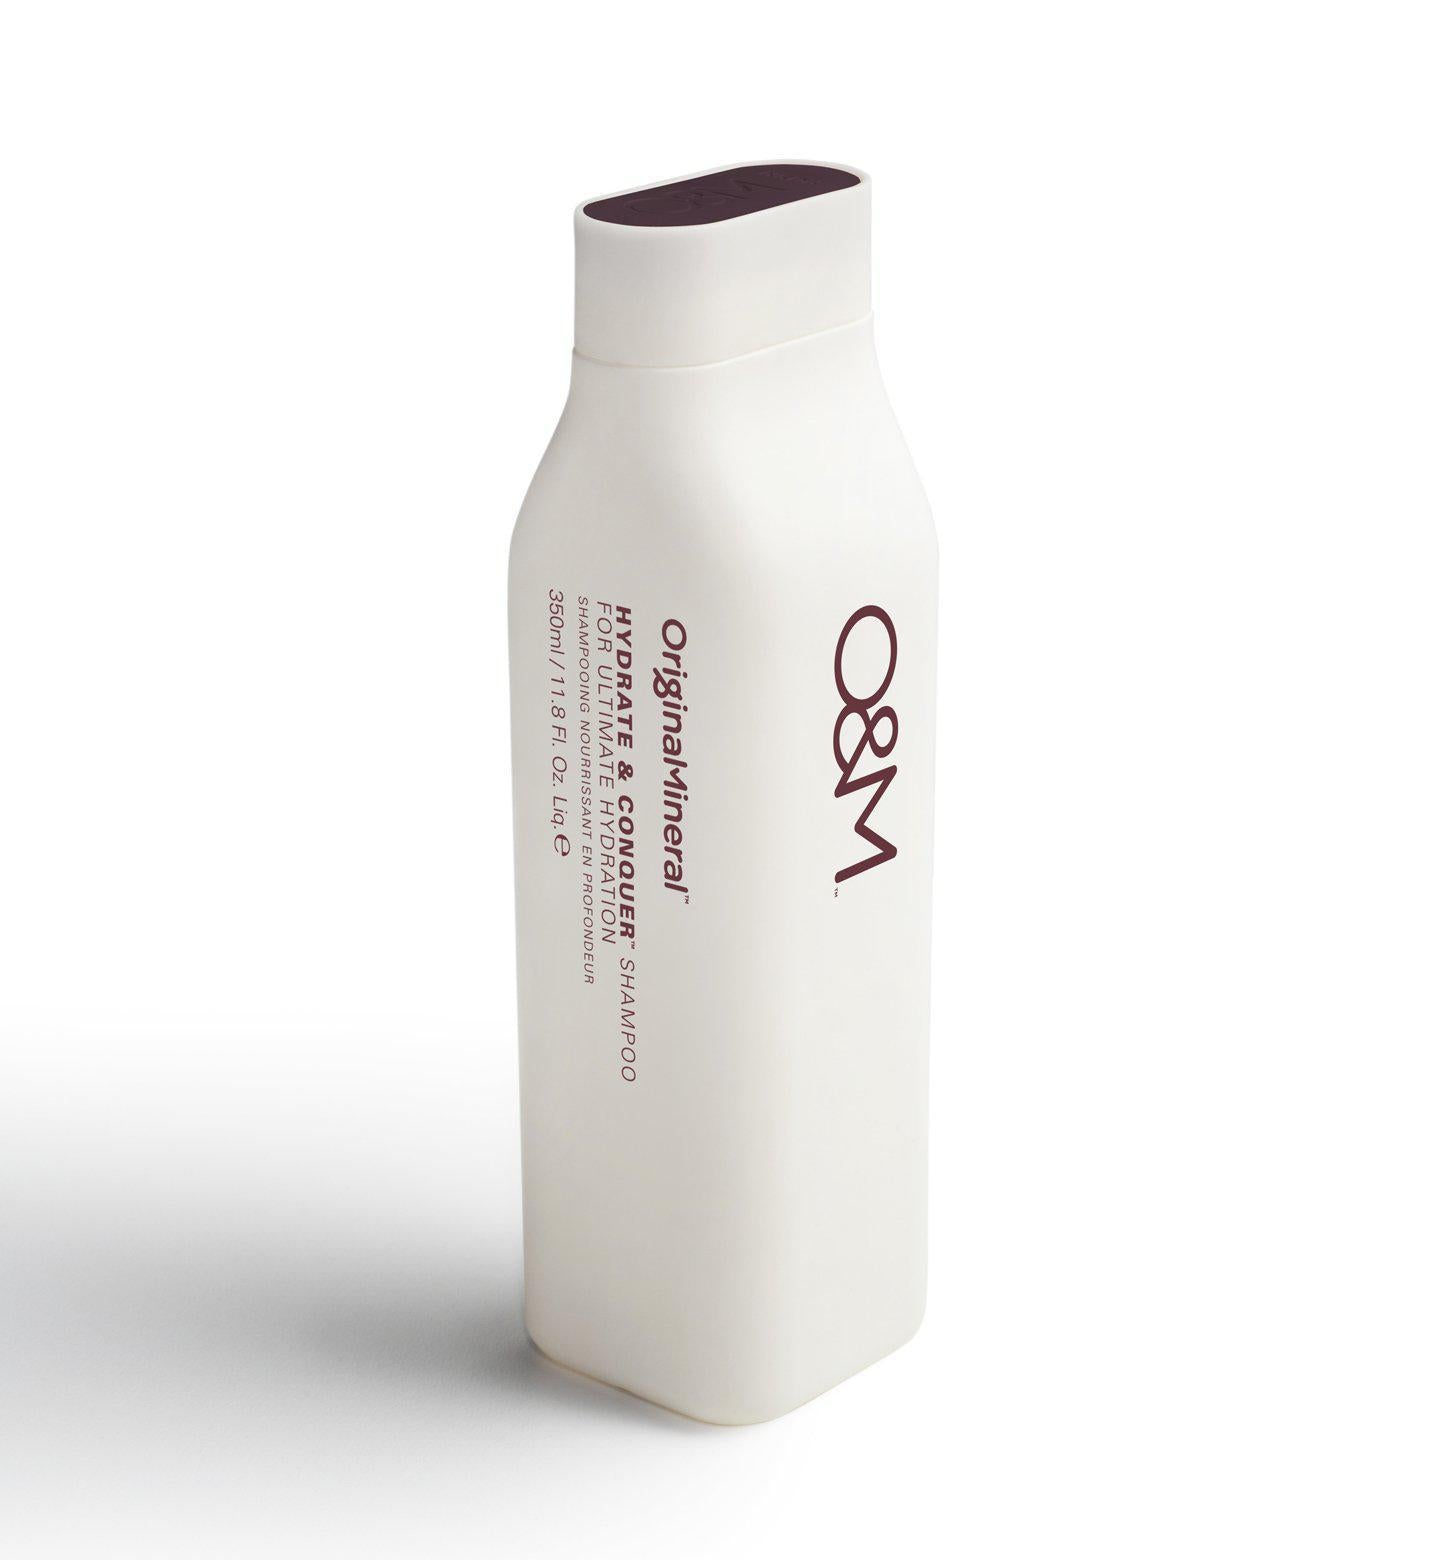 O&M Hydrate & Conquer Shampoo 250ml - Mr Burrows Hair